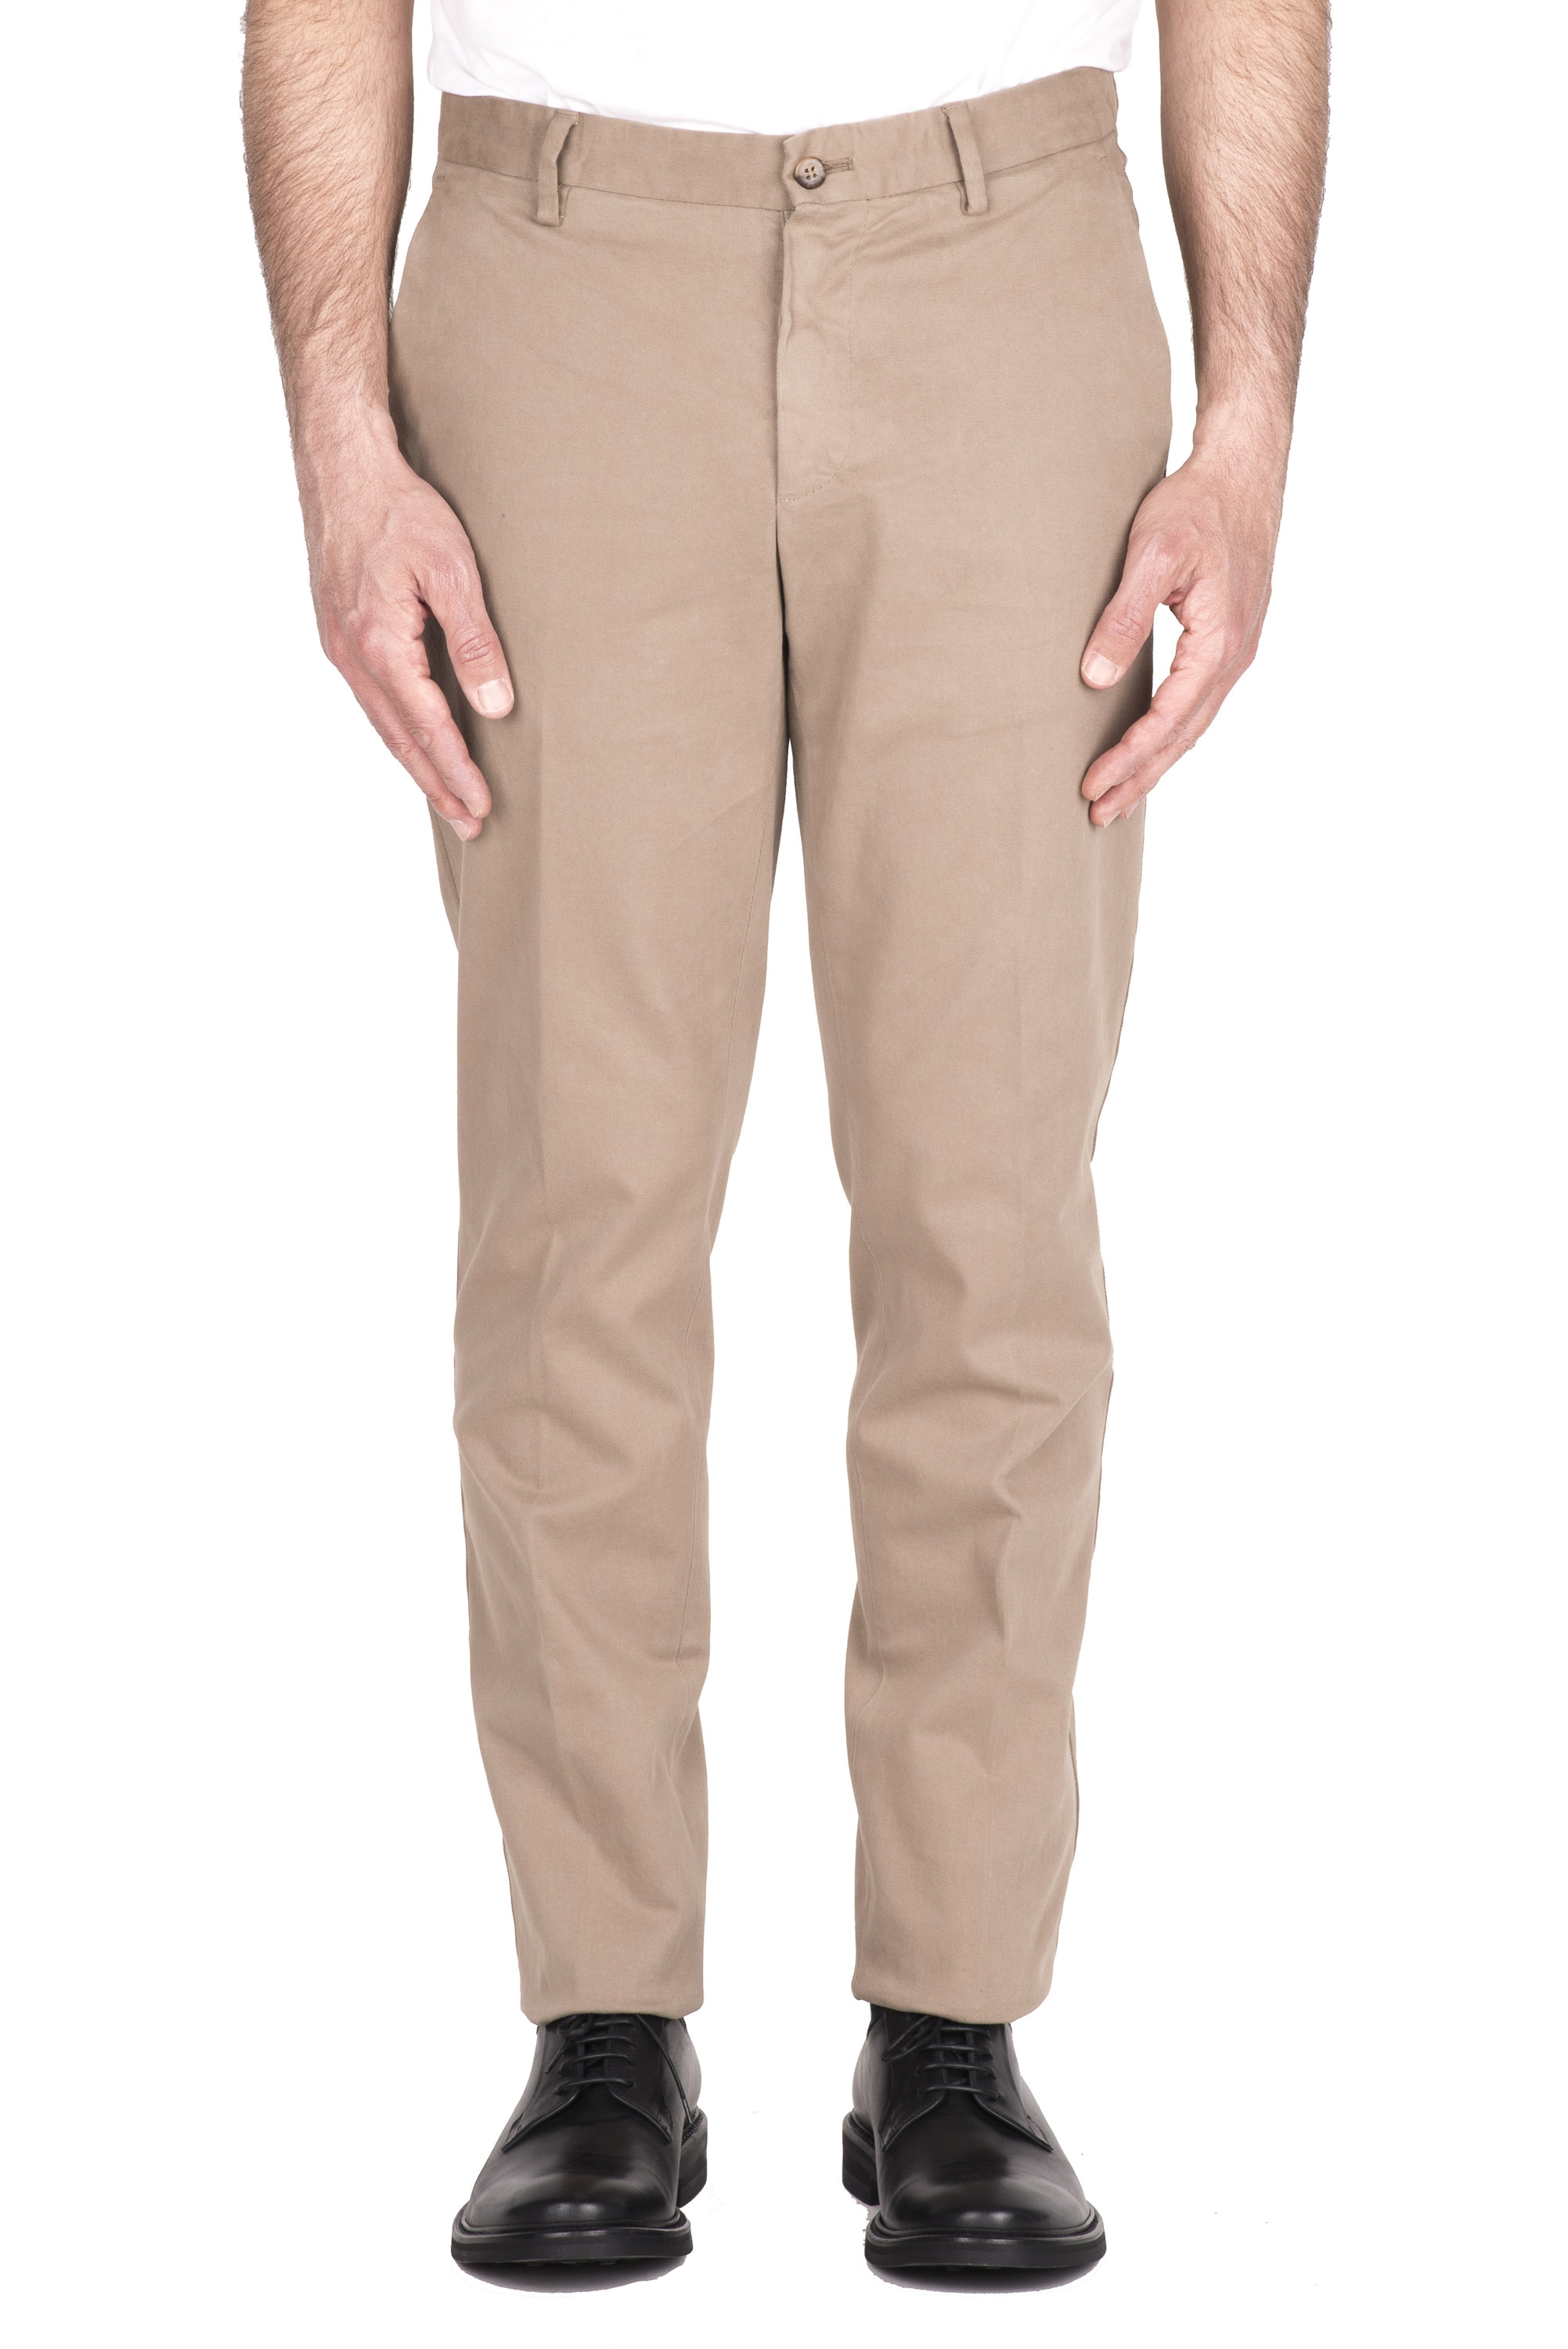 SBU 03430_2021AW Pantaloni chino classici in cotone stretch beige 01